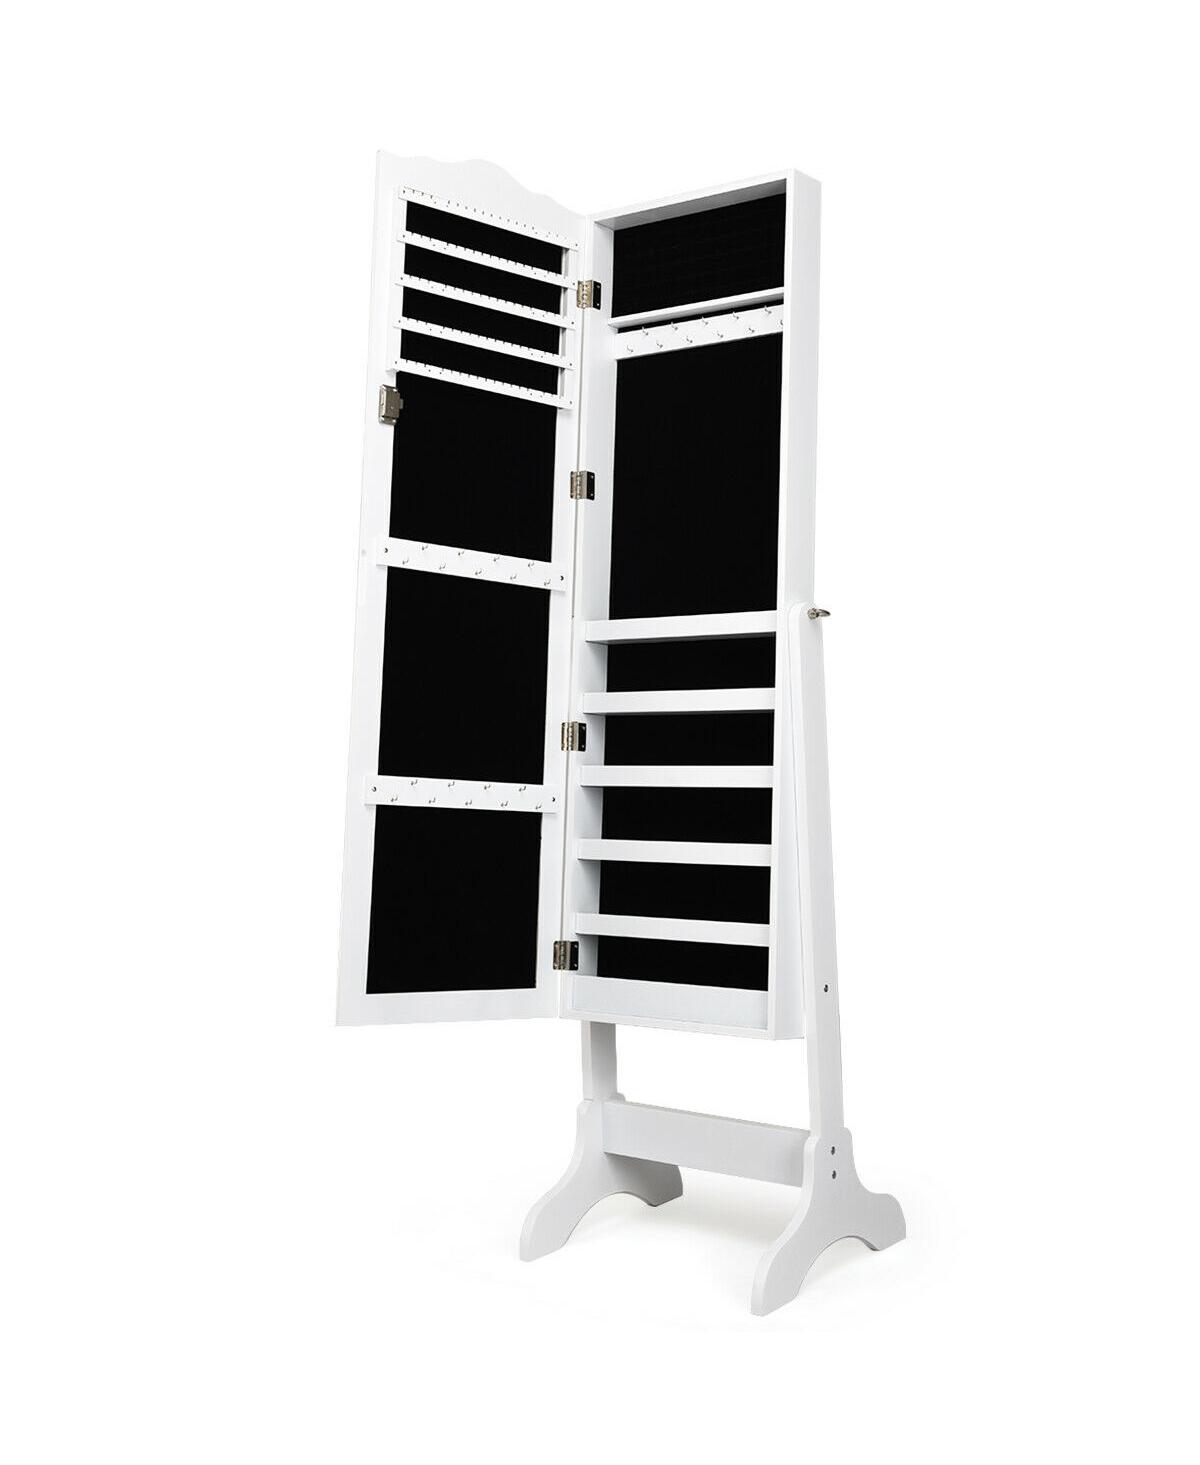 Mirrored Jewelry Cabinet Organizer Storage Box White - White